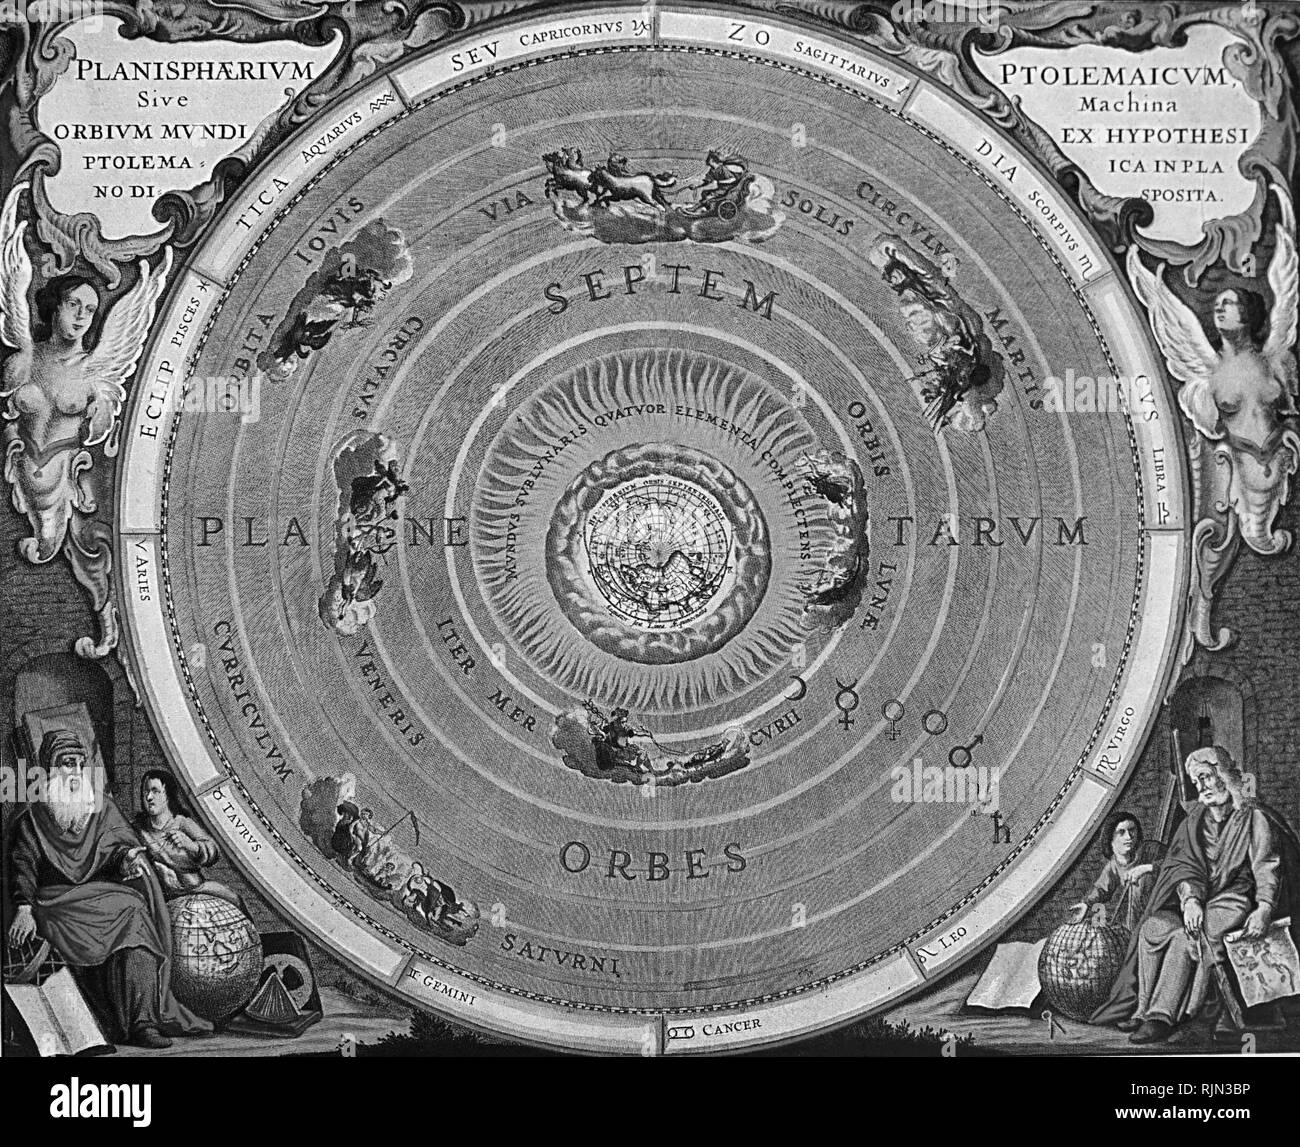 Abbildung: Die astronomischen Vorhersagen der Geozentrischen astronomische Ptolemäus Modell wurden verwendet, astrologischen und astronomischen Diagrammen für über 1500 Jahre vorzubereiten. Das Geozentrische Modell herrschte in der frühen Neuzeit, sondern aus dem späten 16. Jahrhundert, es wurde allmählich durch das heliozentrische Modell von Kopernikus, Galilei und Kepler abgelöst. Stockfoto